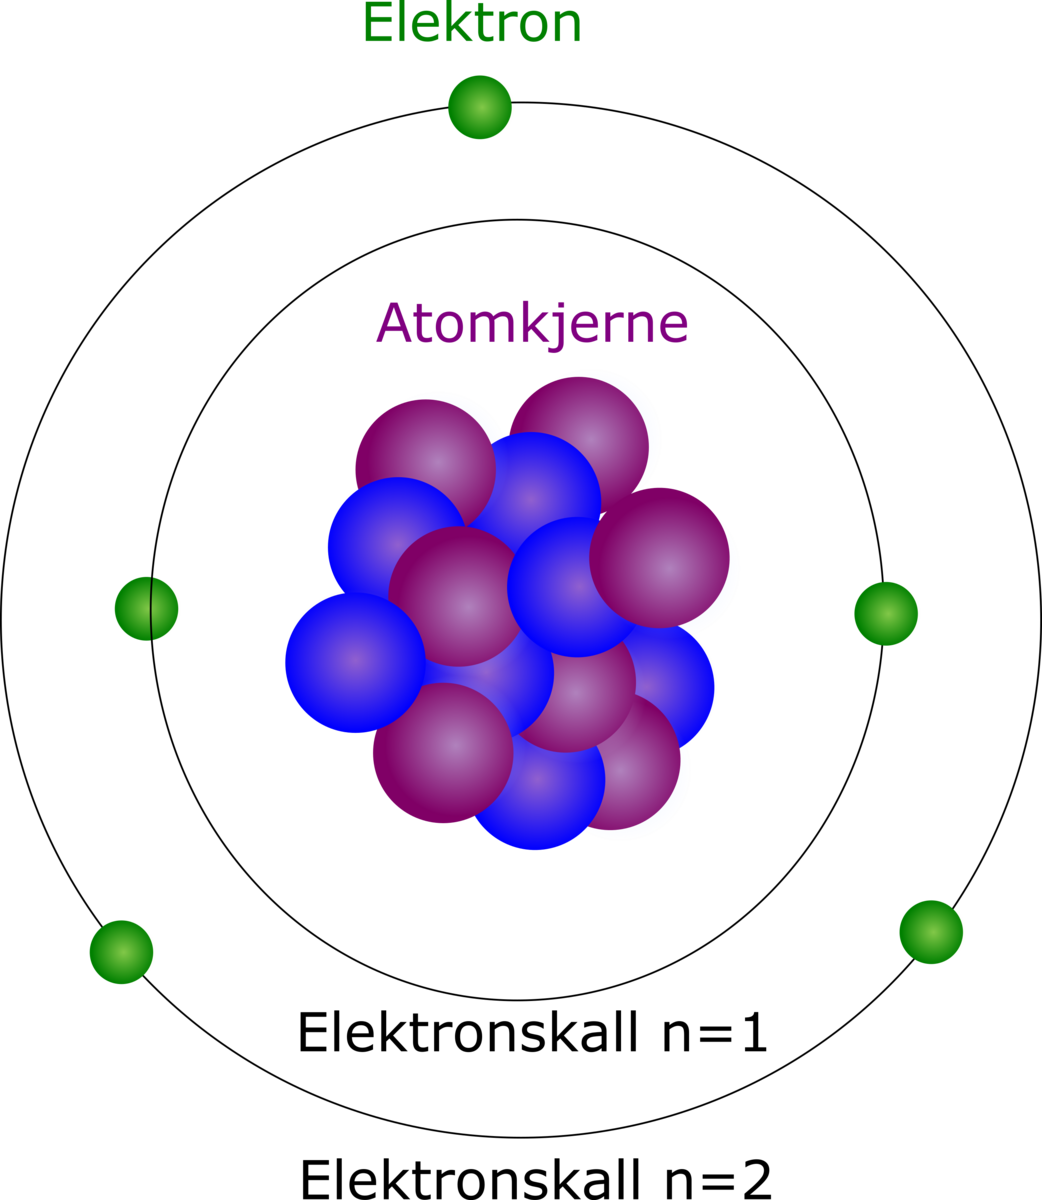 Illustrasjon av elektronskall i et atom